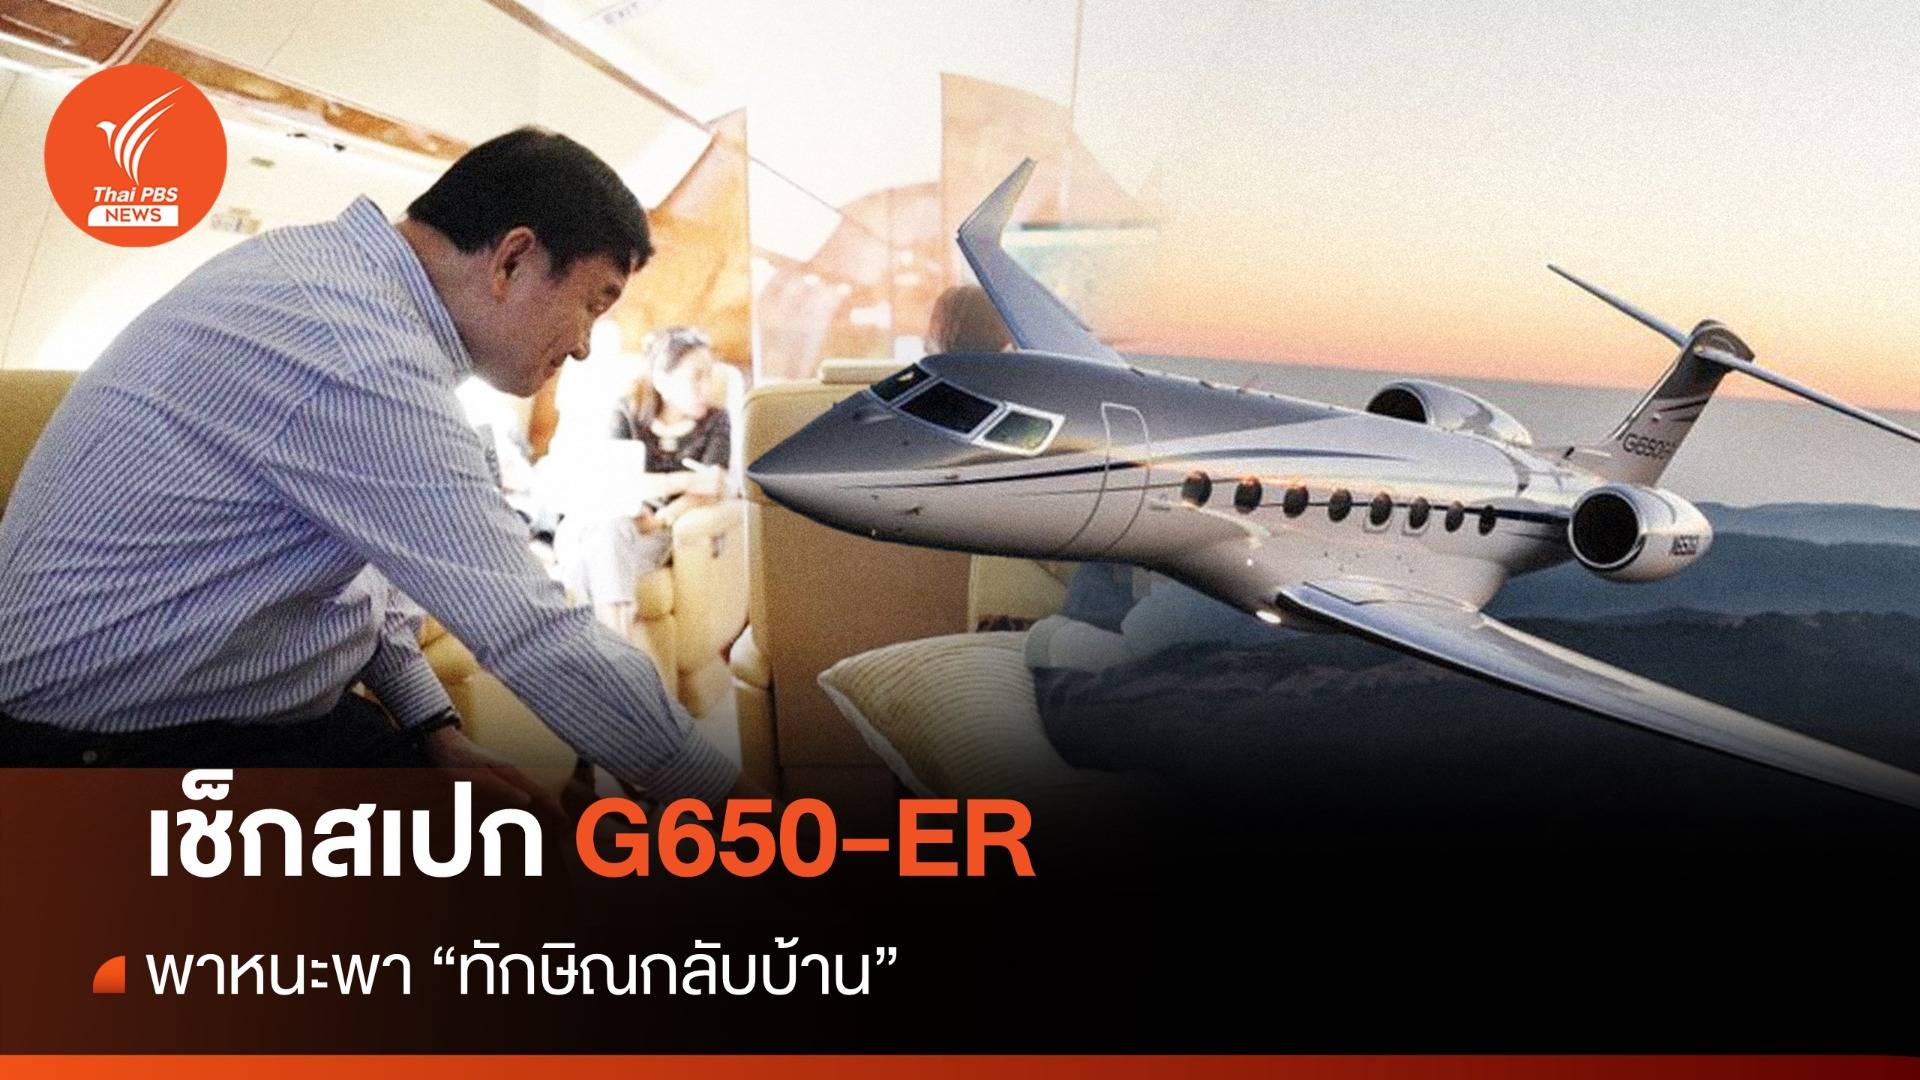 ทักษิณกลับไทย : ส่องเครื่องบินส่วนตัว "พาทักษิณกลับบ้าน" 